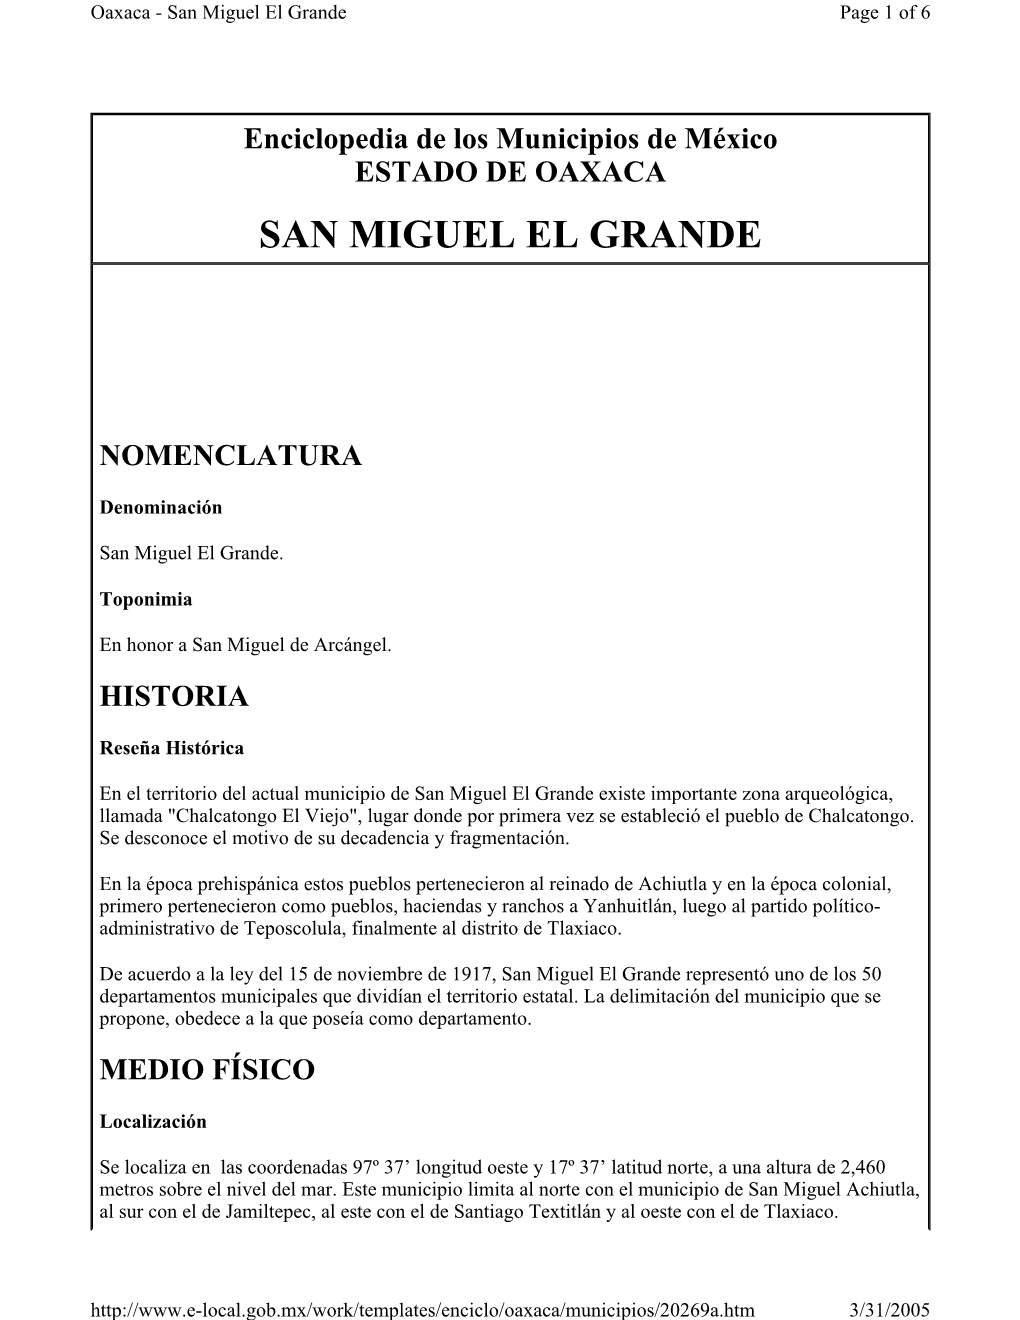 San Miguel El Grande Page 1 of 6